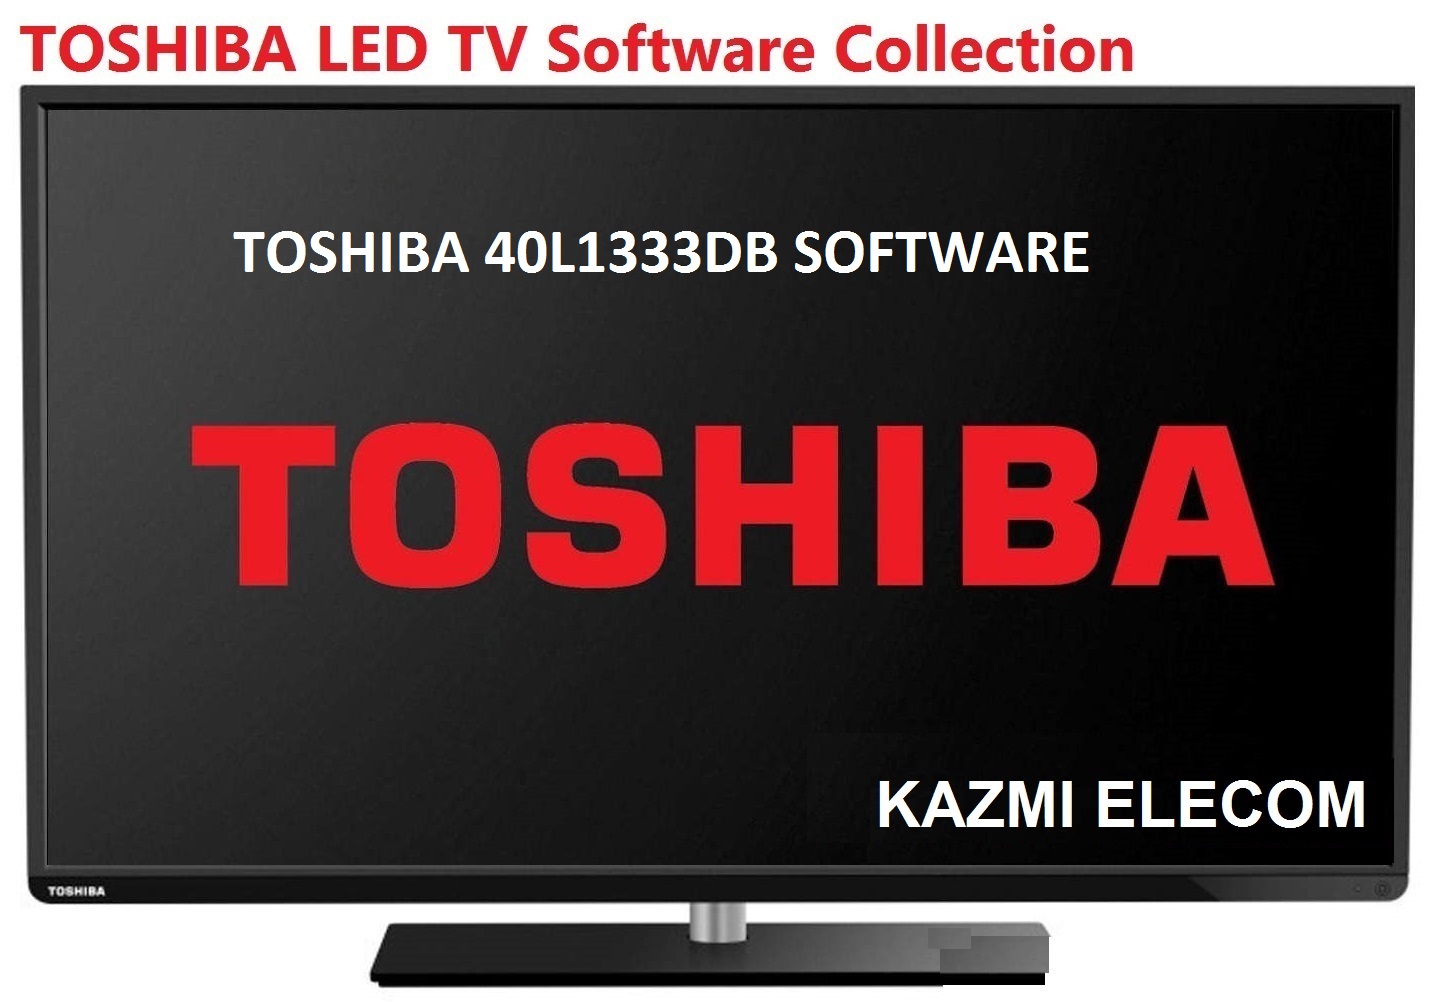 Toshiba 40L1333Db